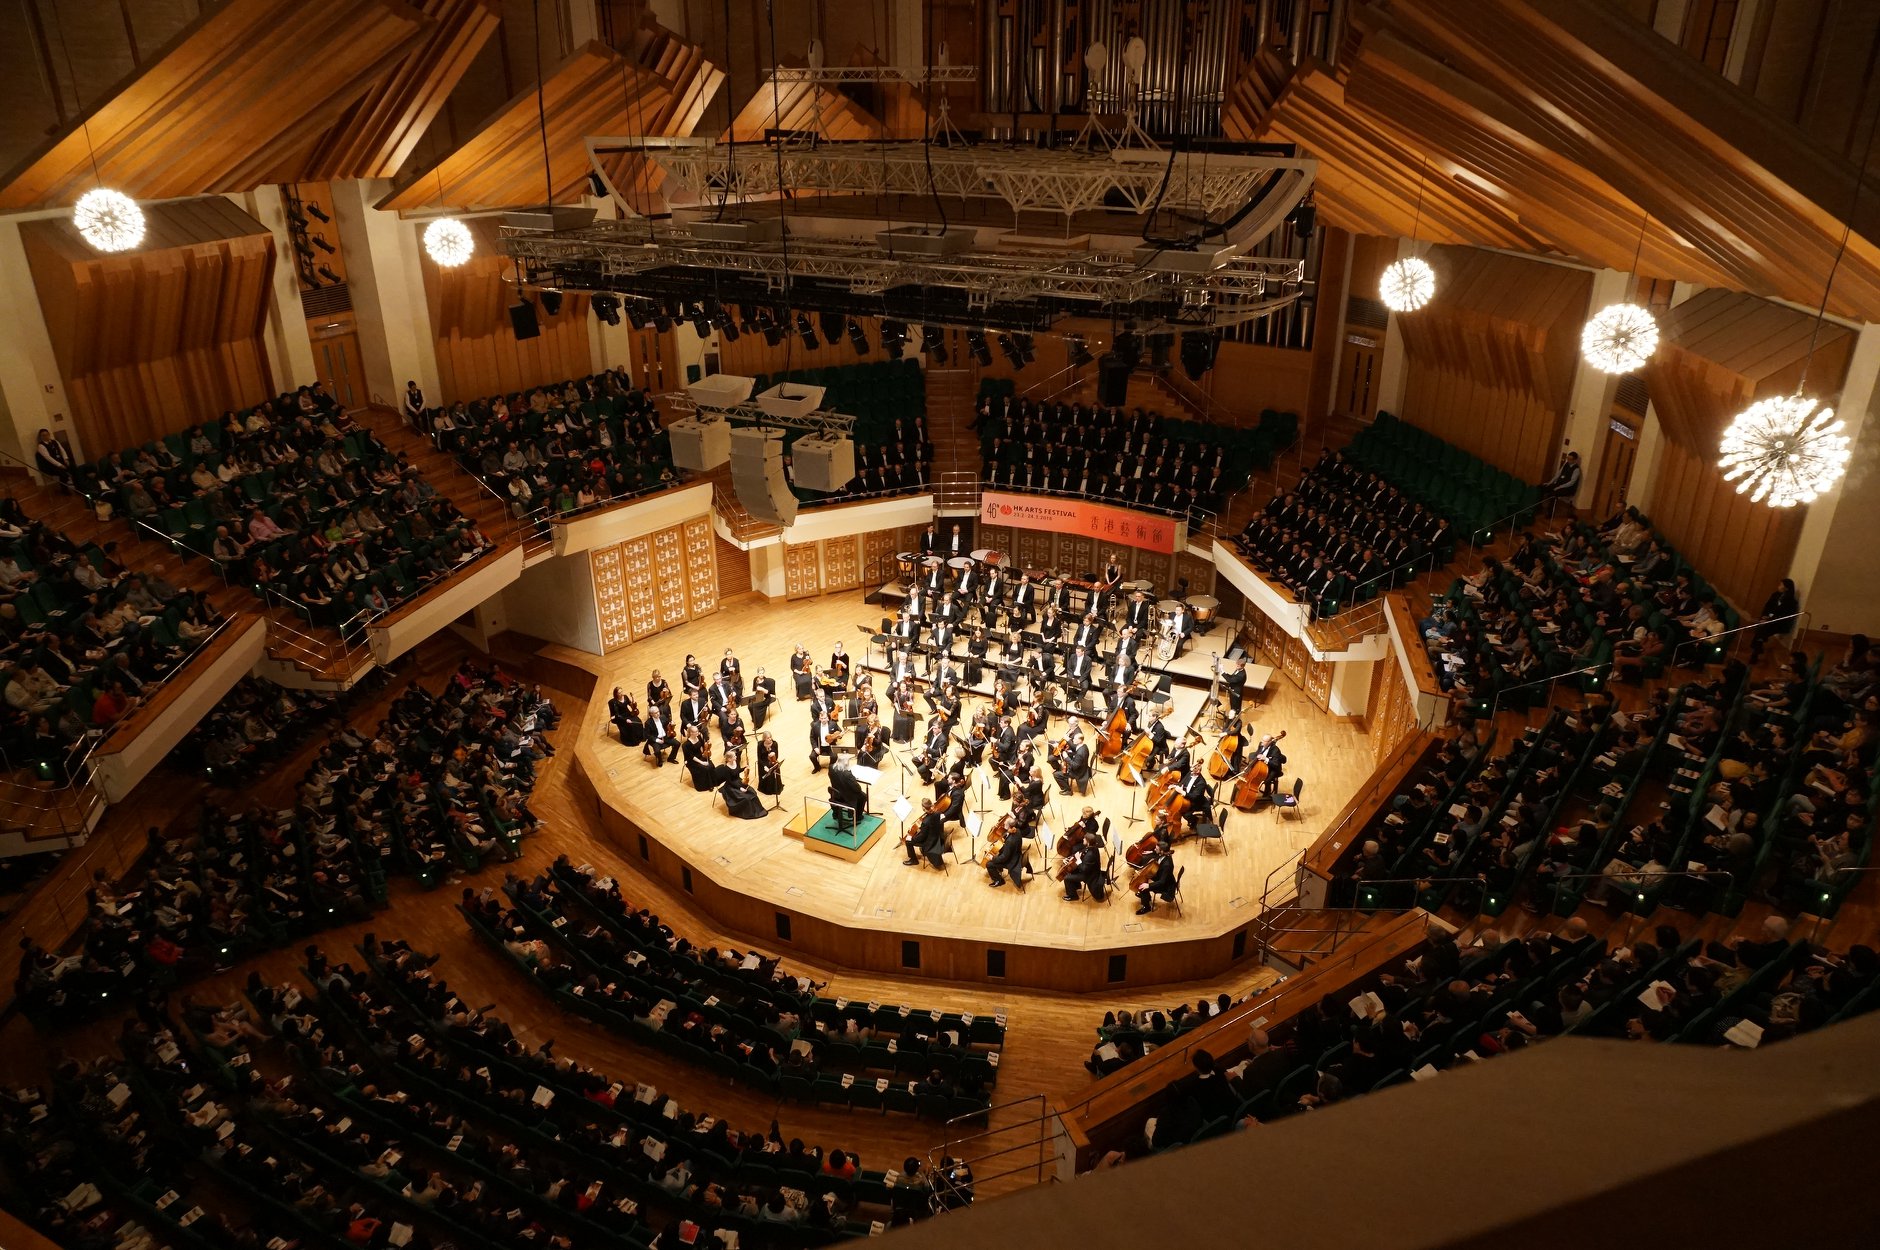 Das Estnische Nationale Sinfonieorchester tourt durch Frankreich und Deutschland